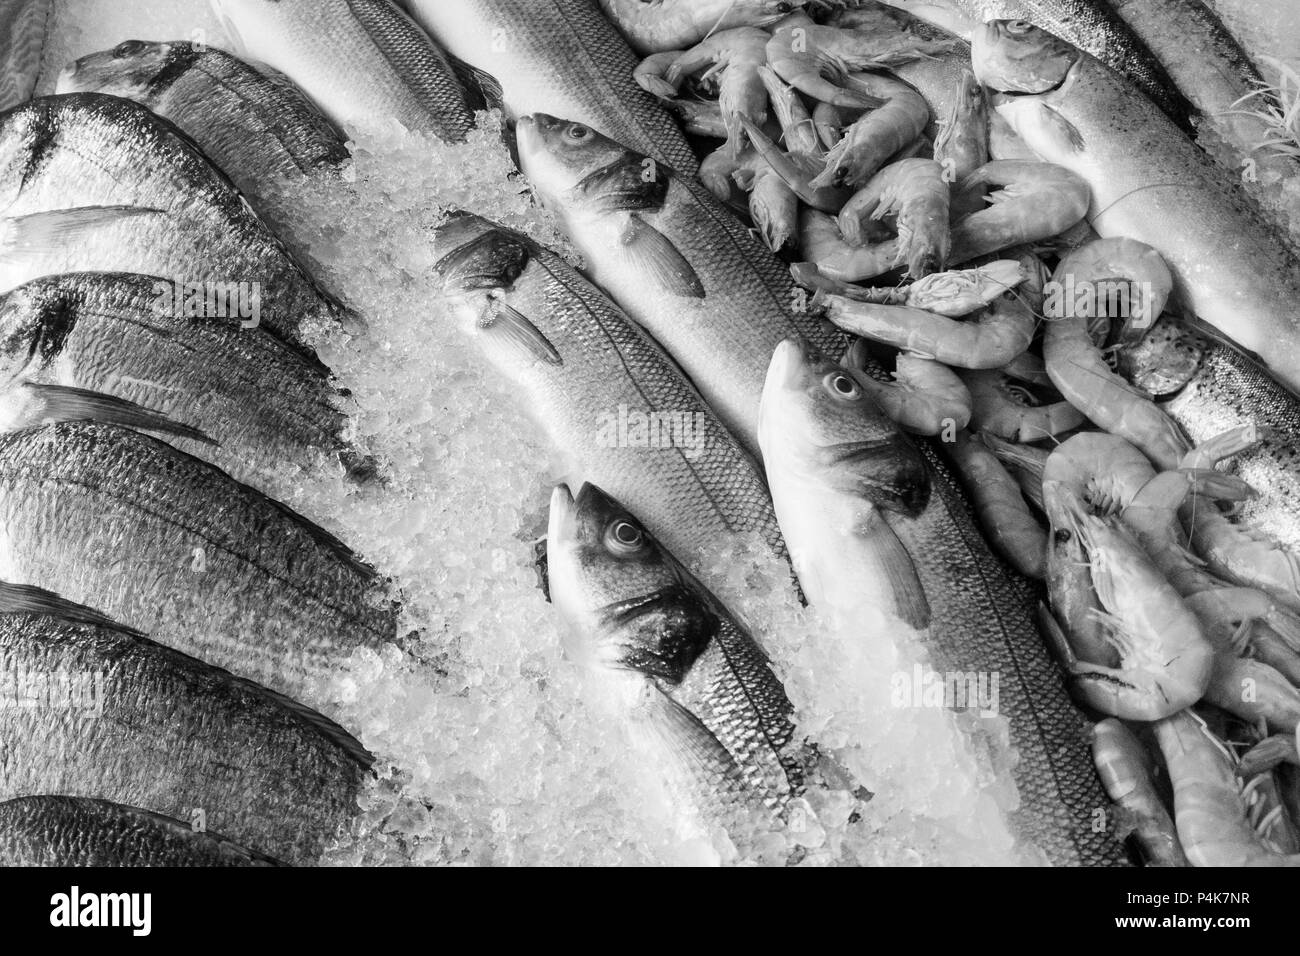 Schwarz-weiß Bild von gefrorenen Fischen und Garnelen auf Eis im Fischmarkt Stockfoto